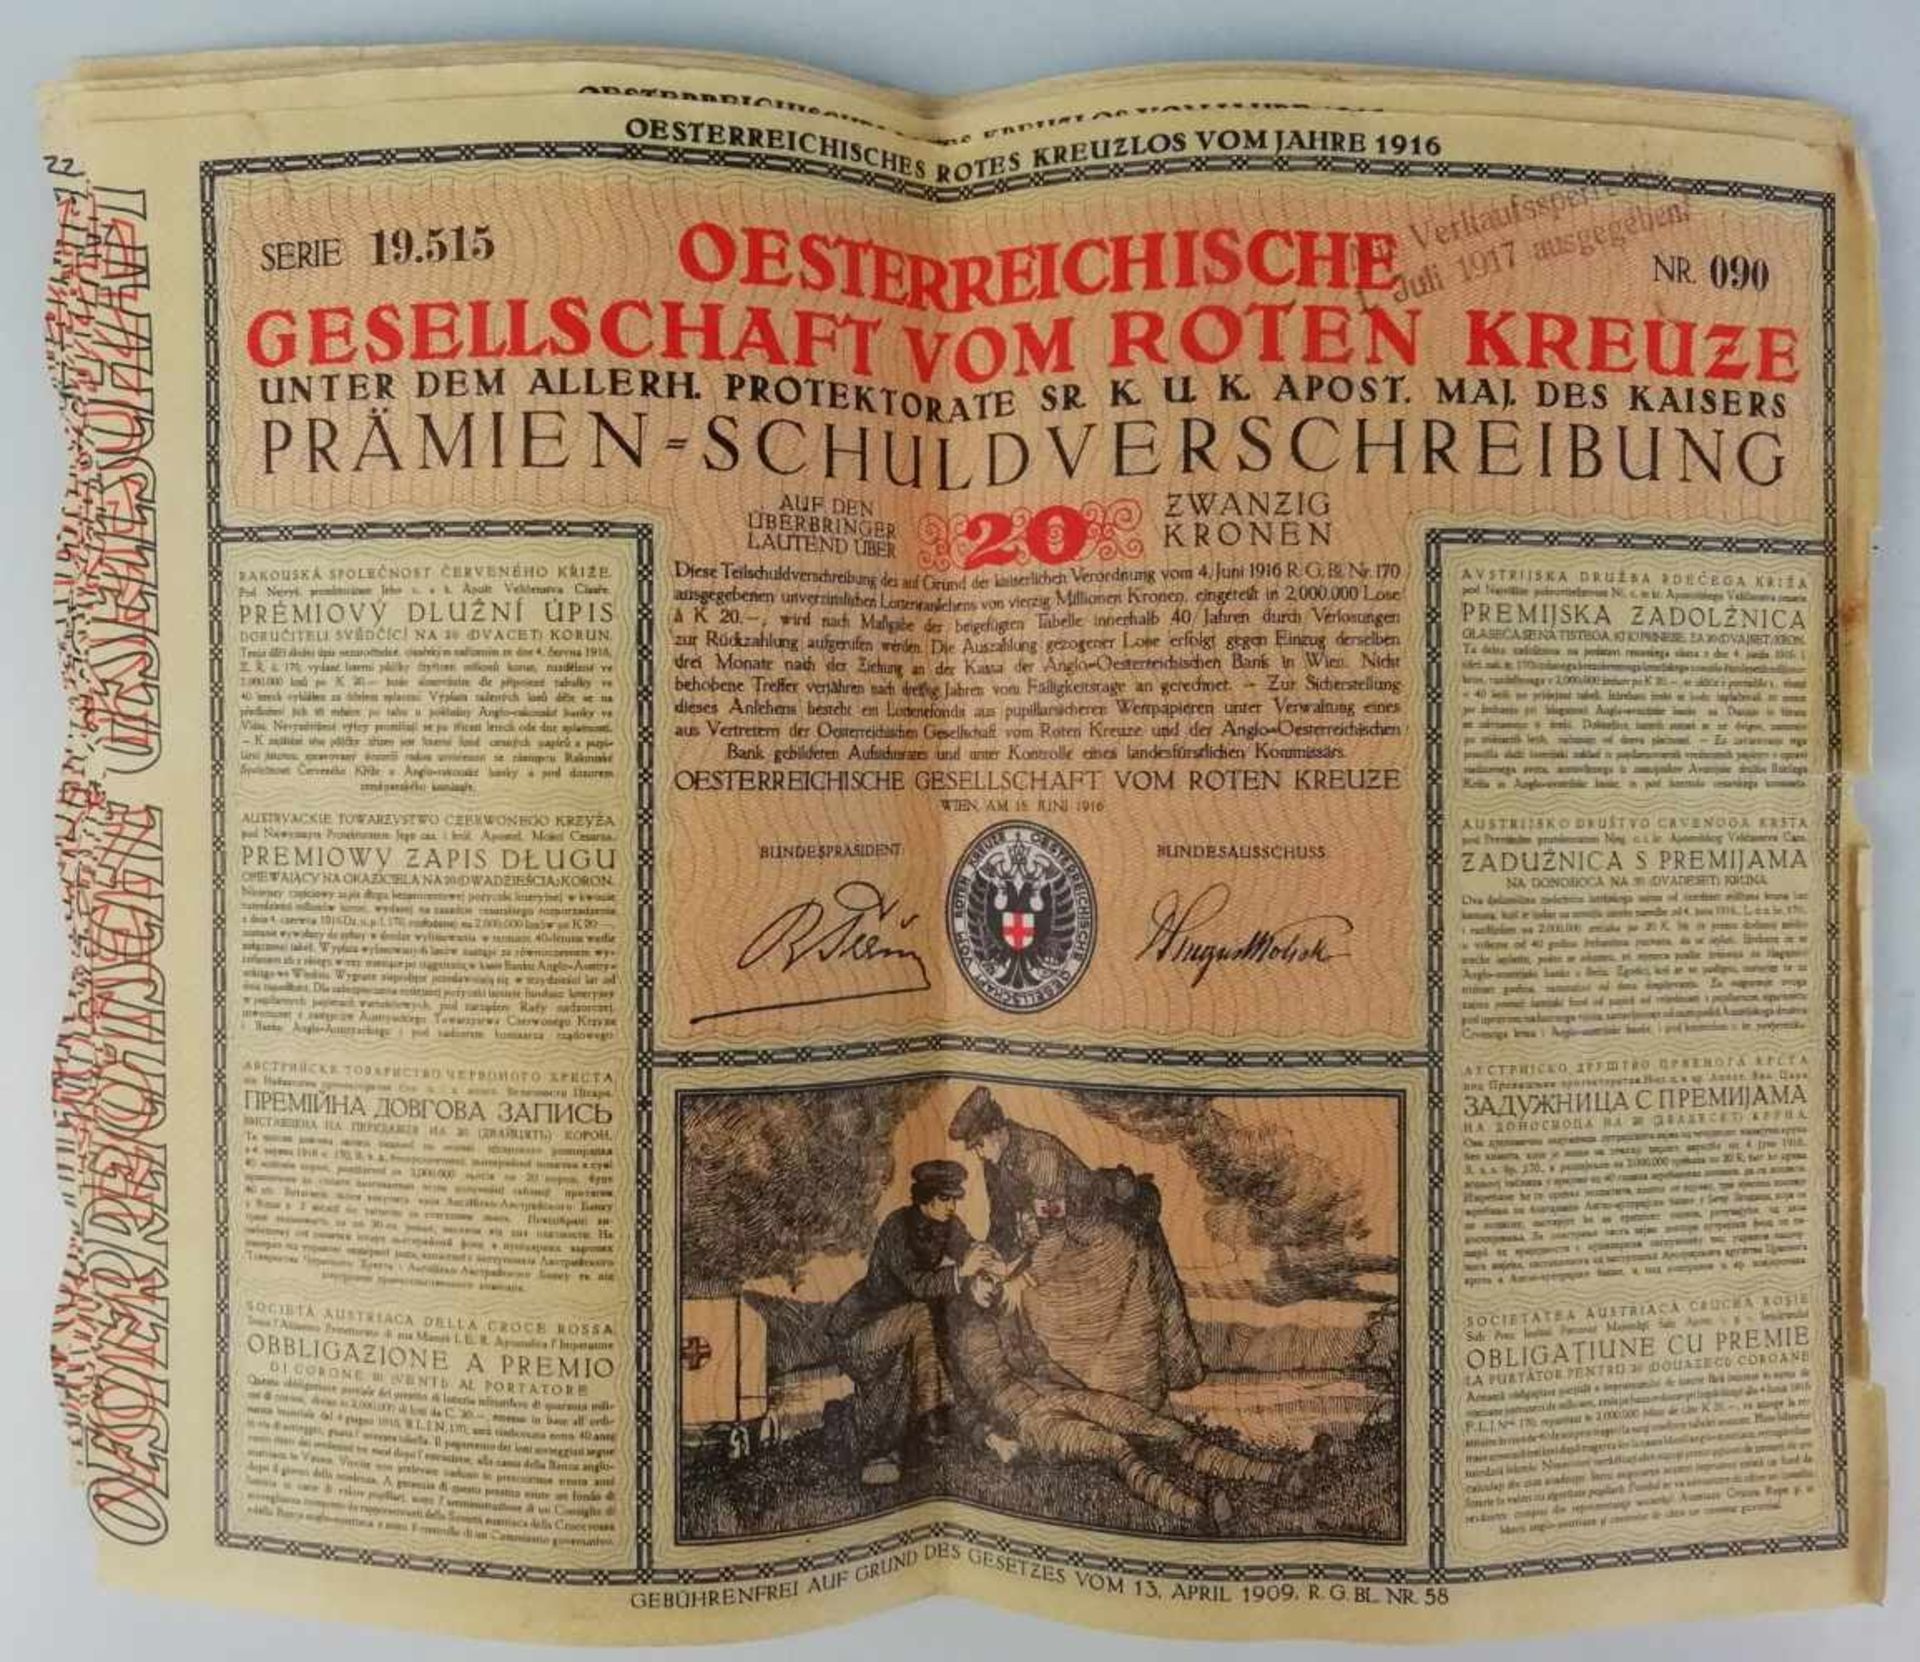 30 Stück Prämien-SchuldverschreibungÖsterreichische Gesellschaft vom Roten Kreuze 1916, Nennwert